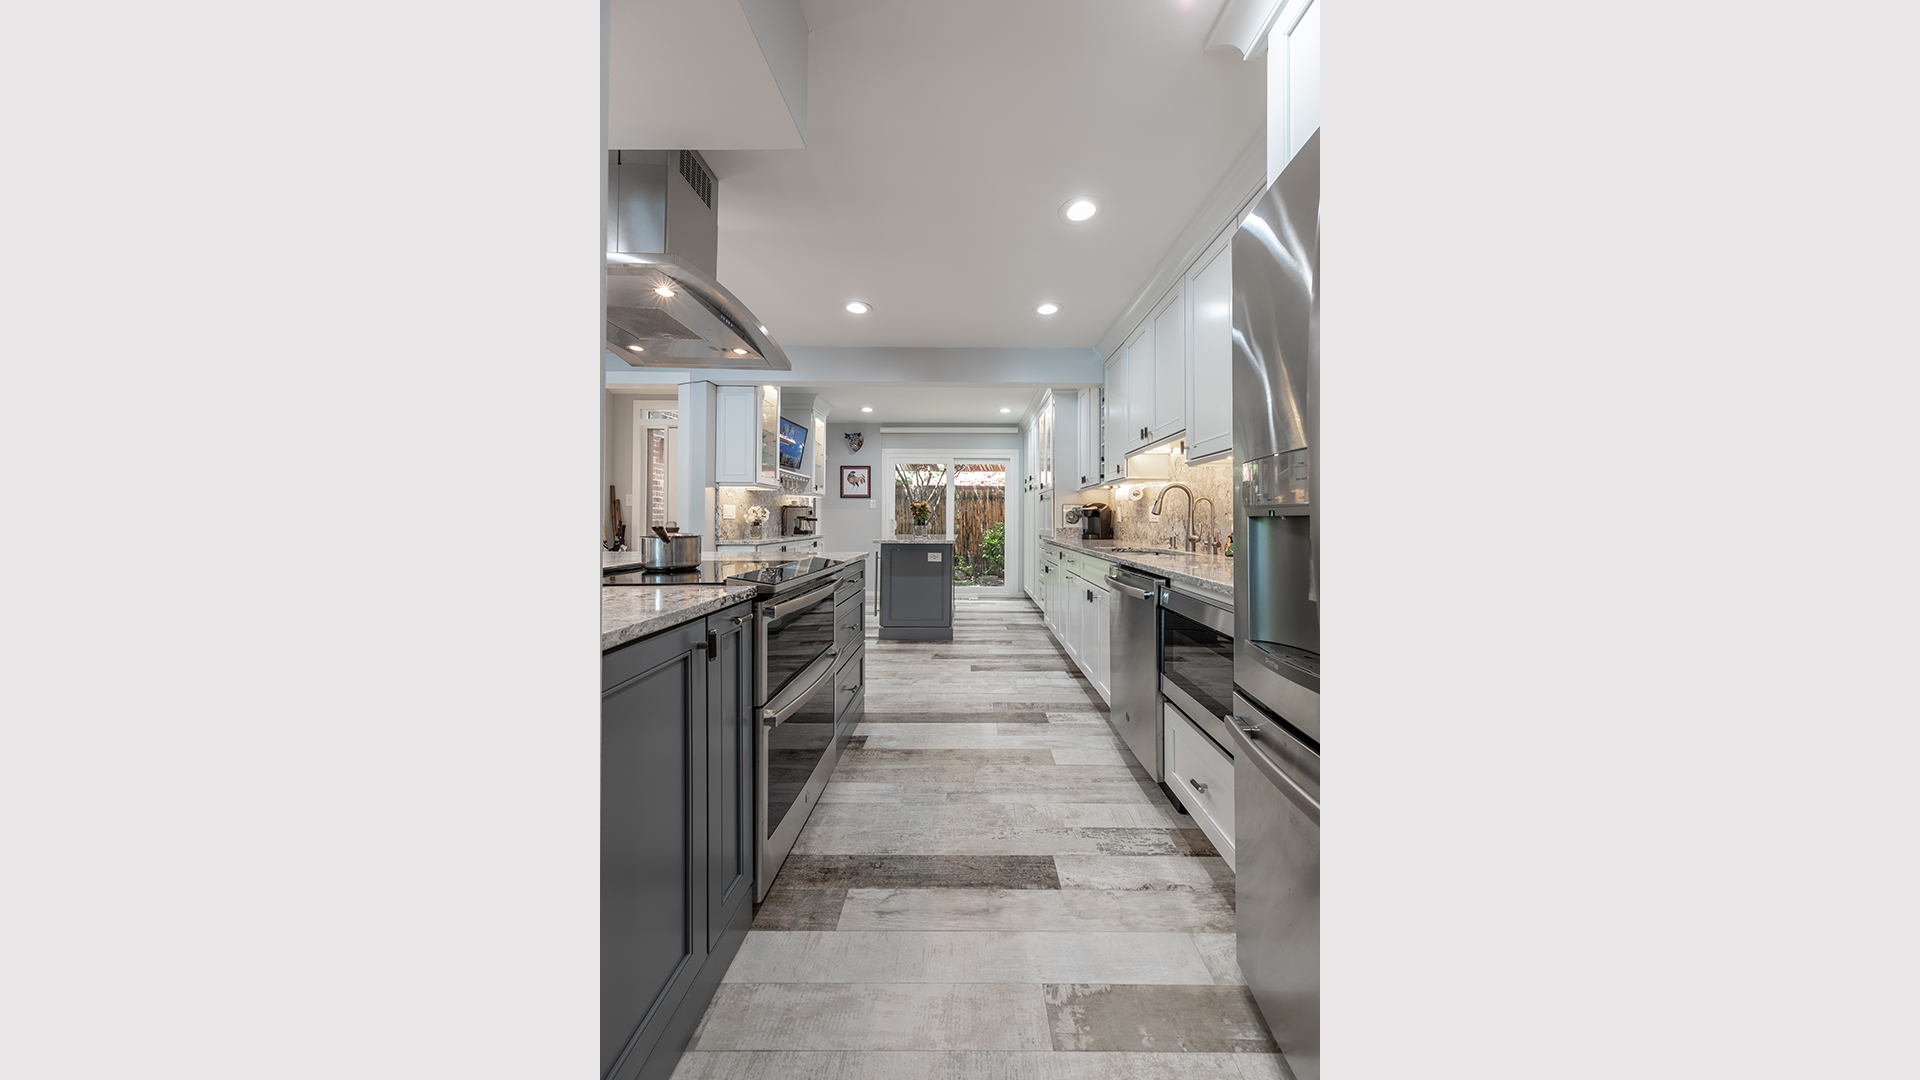 2021 Qualified Remodeler, Master Design Awards, Bronze, Kitchen Below $75,000